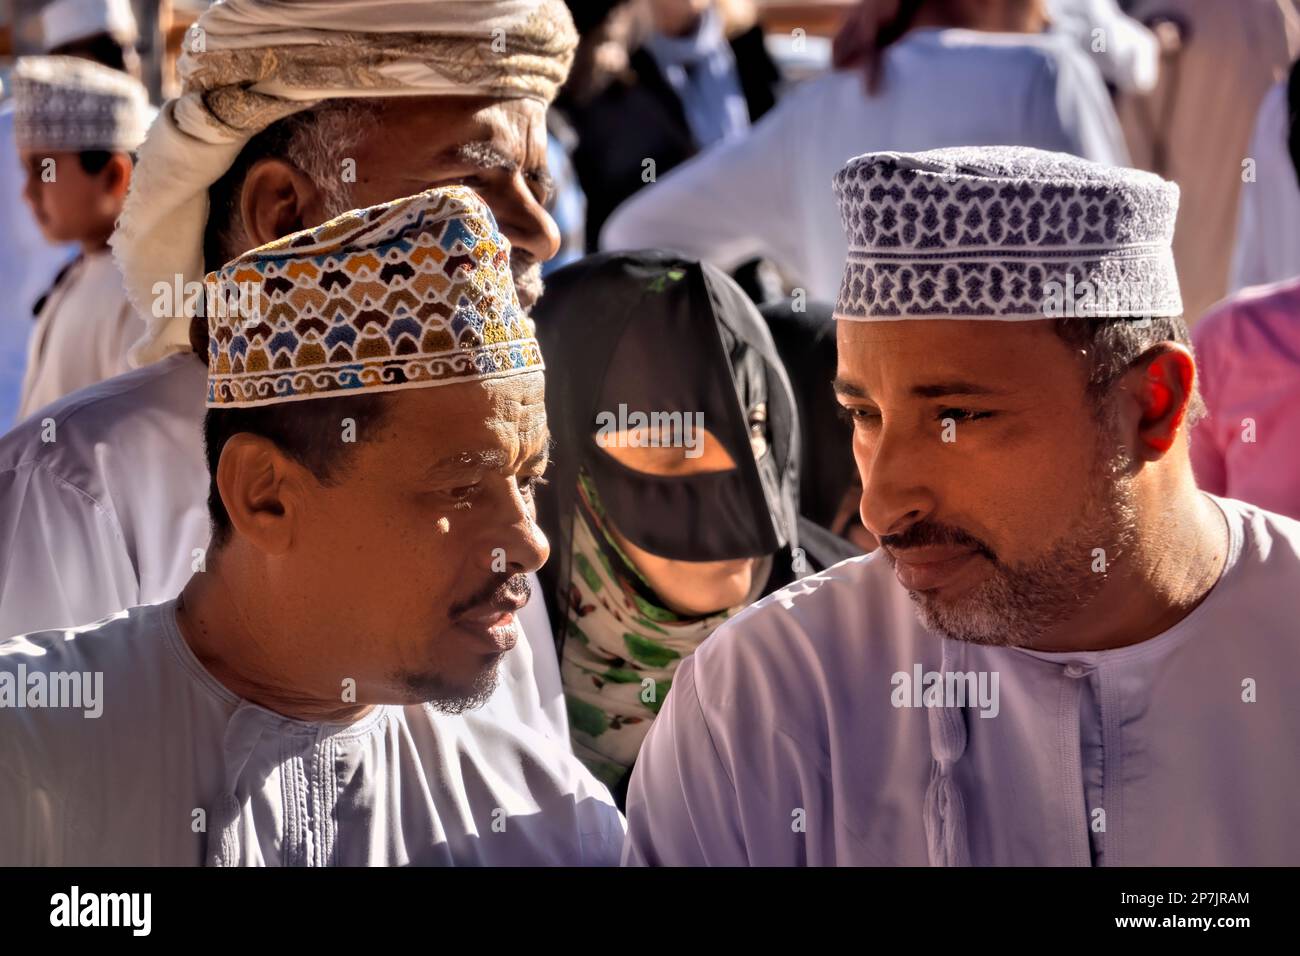 Acheteurs sur le marché de la chèvre, Nizwa, Oman Banque D'Images